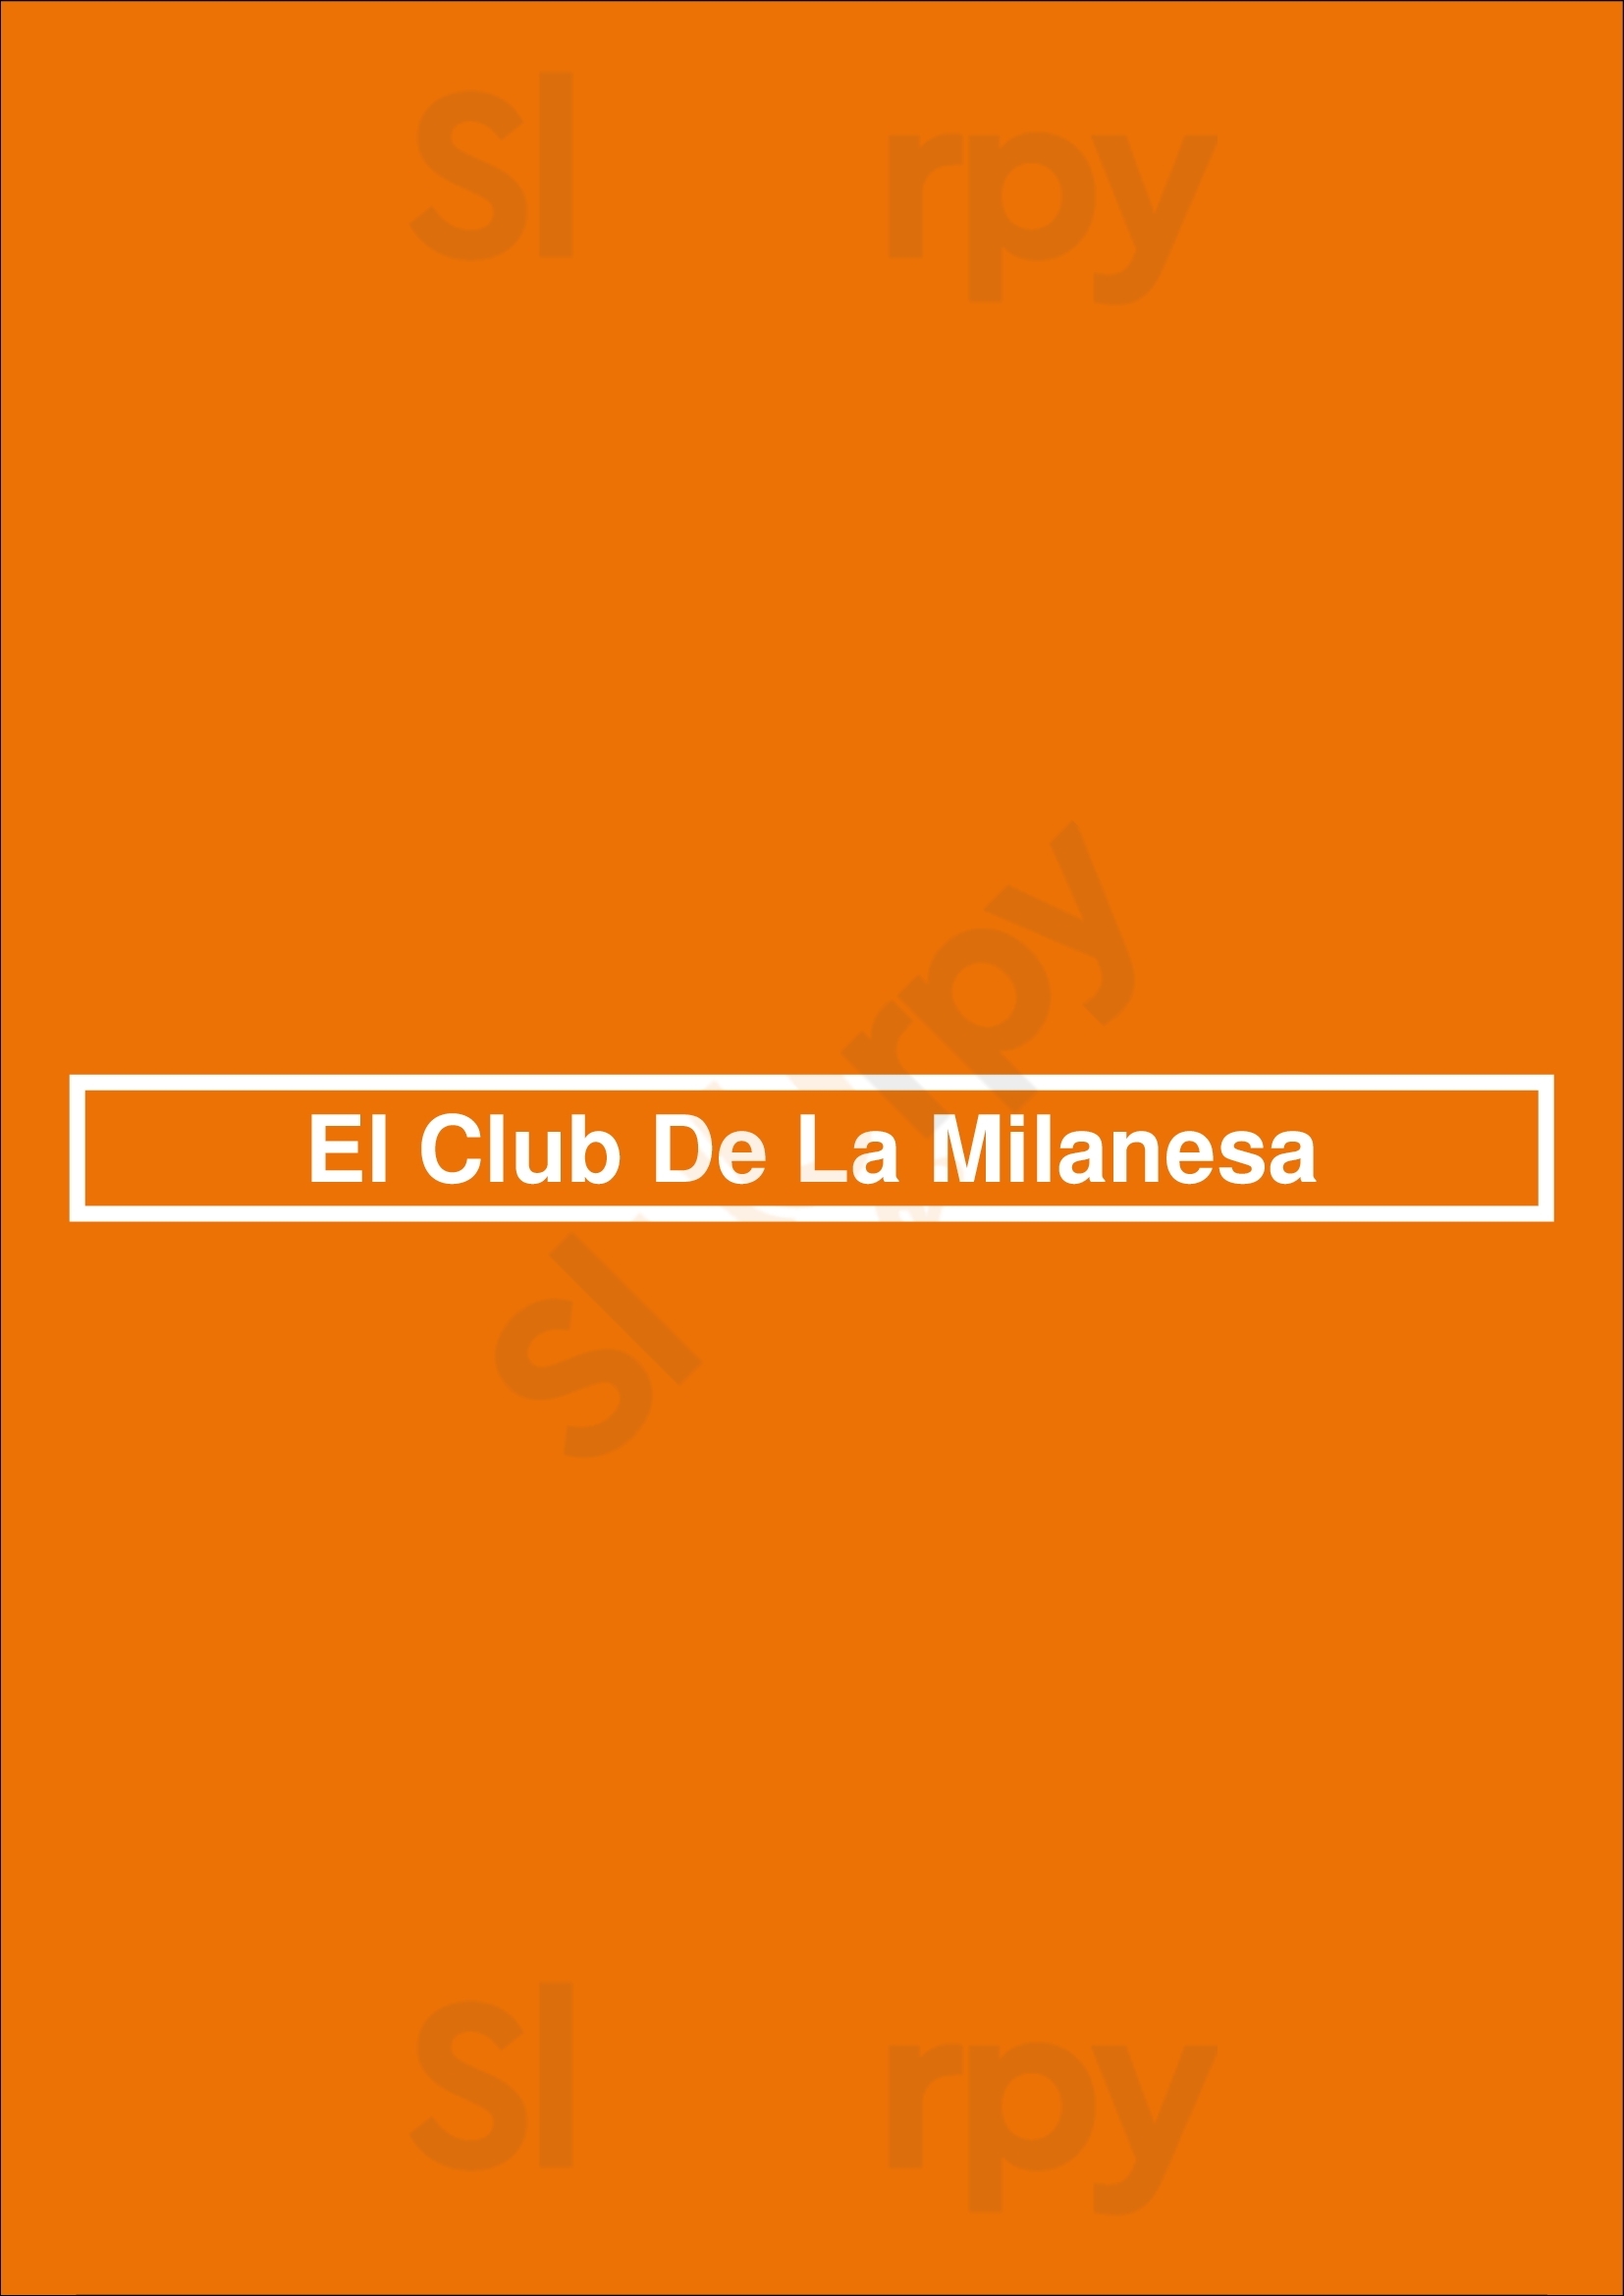 El Club De La Milanesa Córdoba Menu - 1